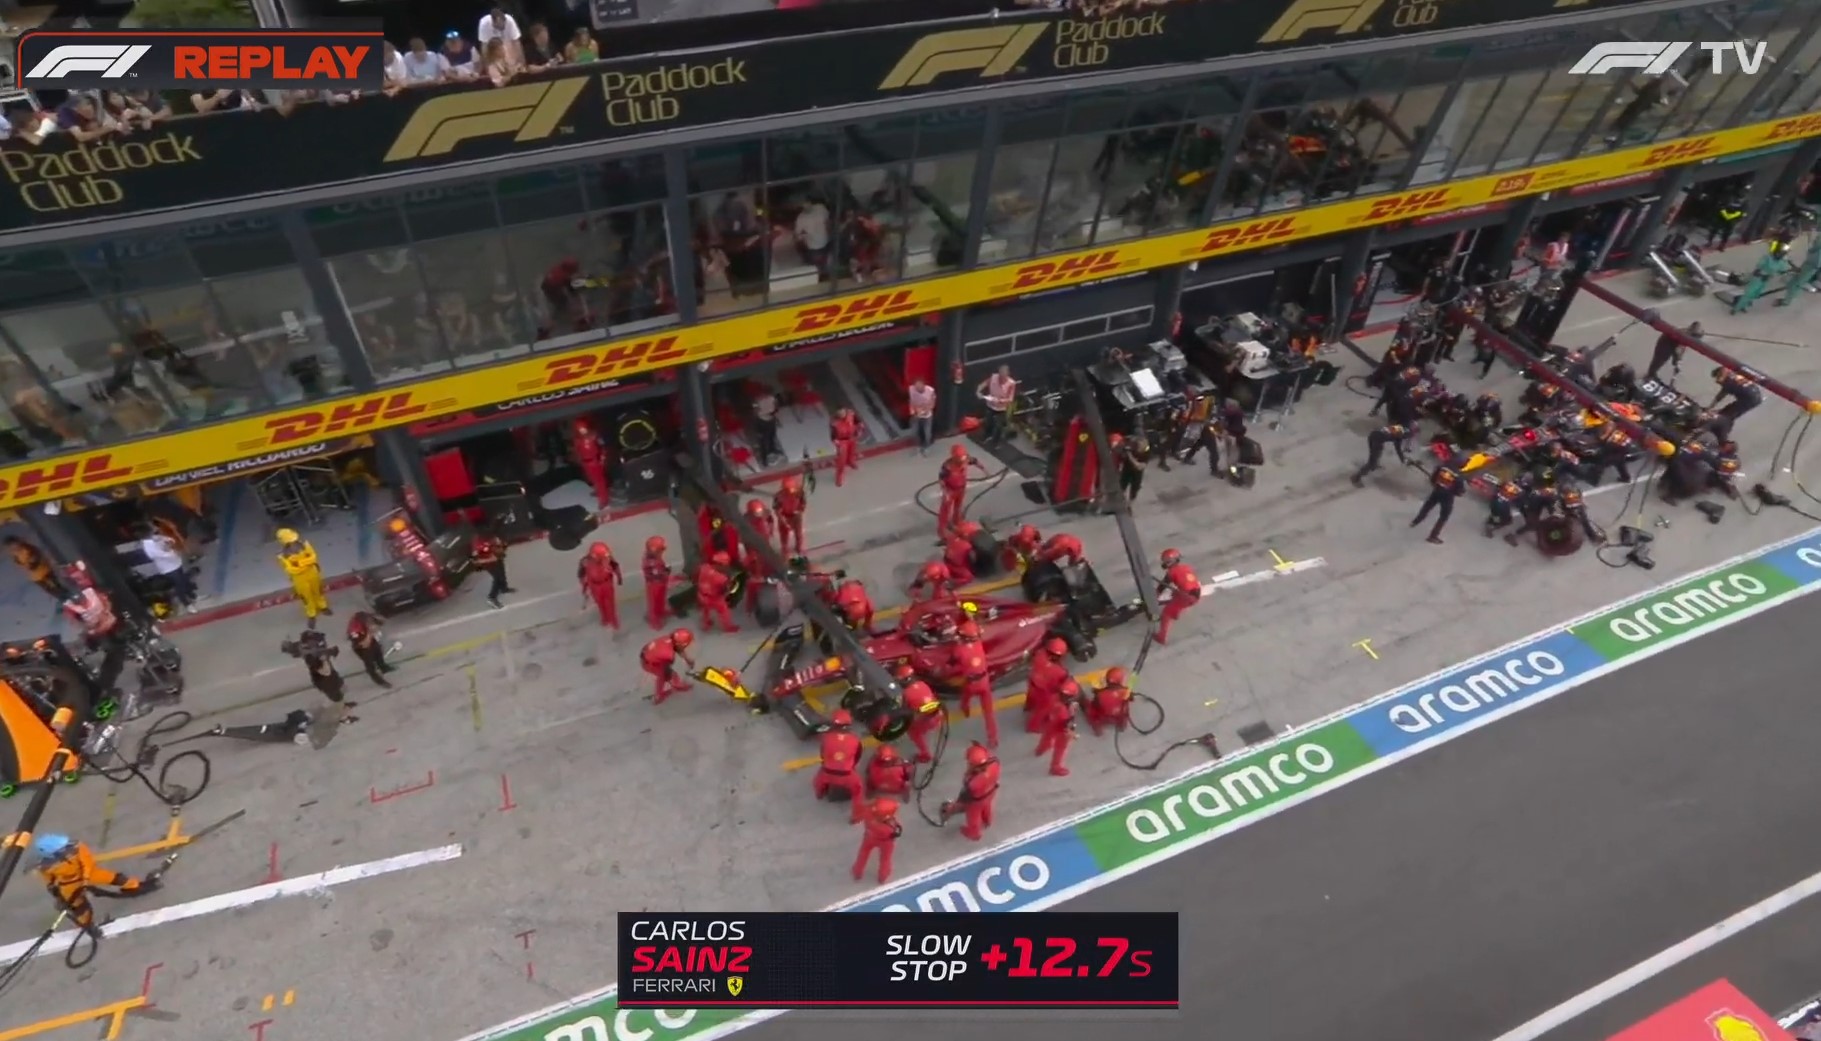 L'arrêt raté de Ferrari sur Sainz où il manque une roue au Grand Prix des Pays-Bas 2022